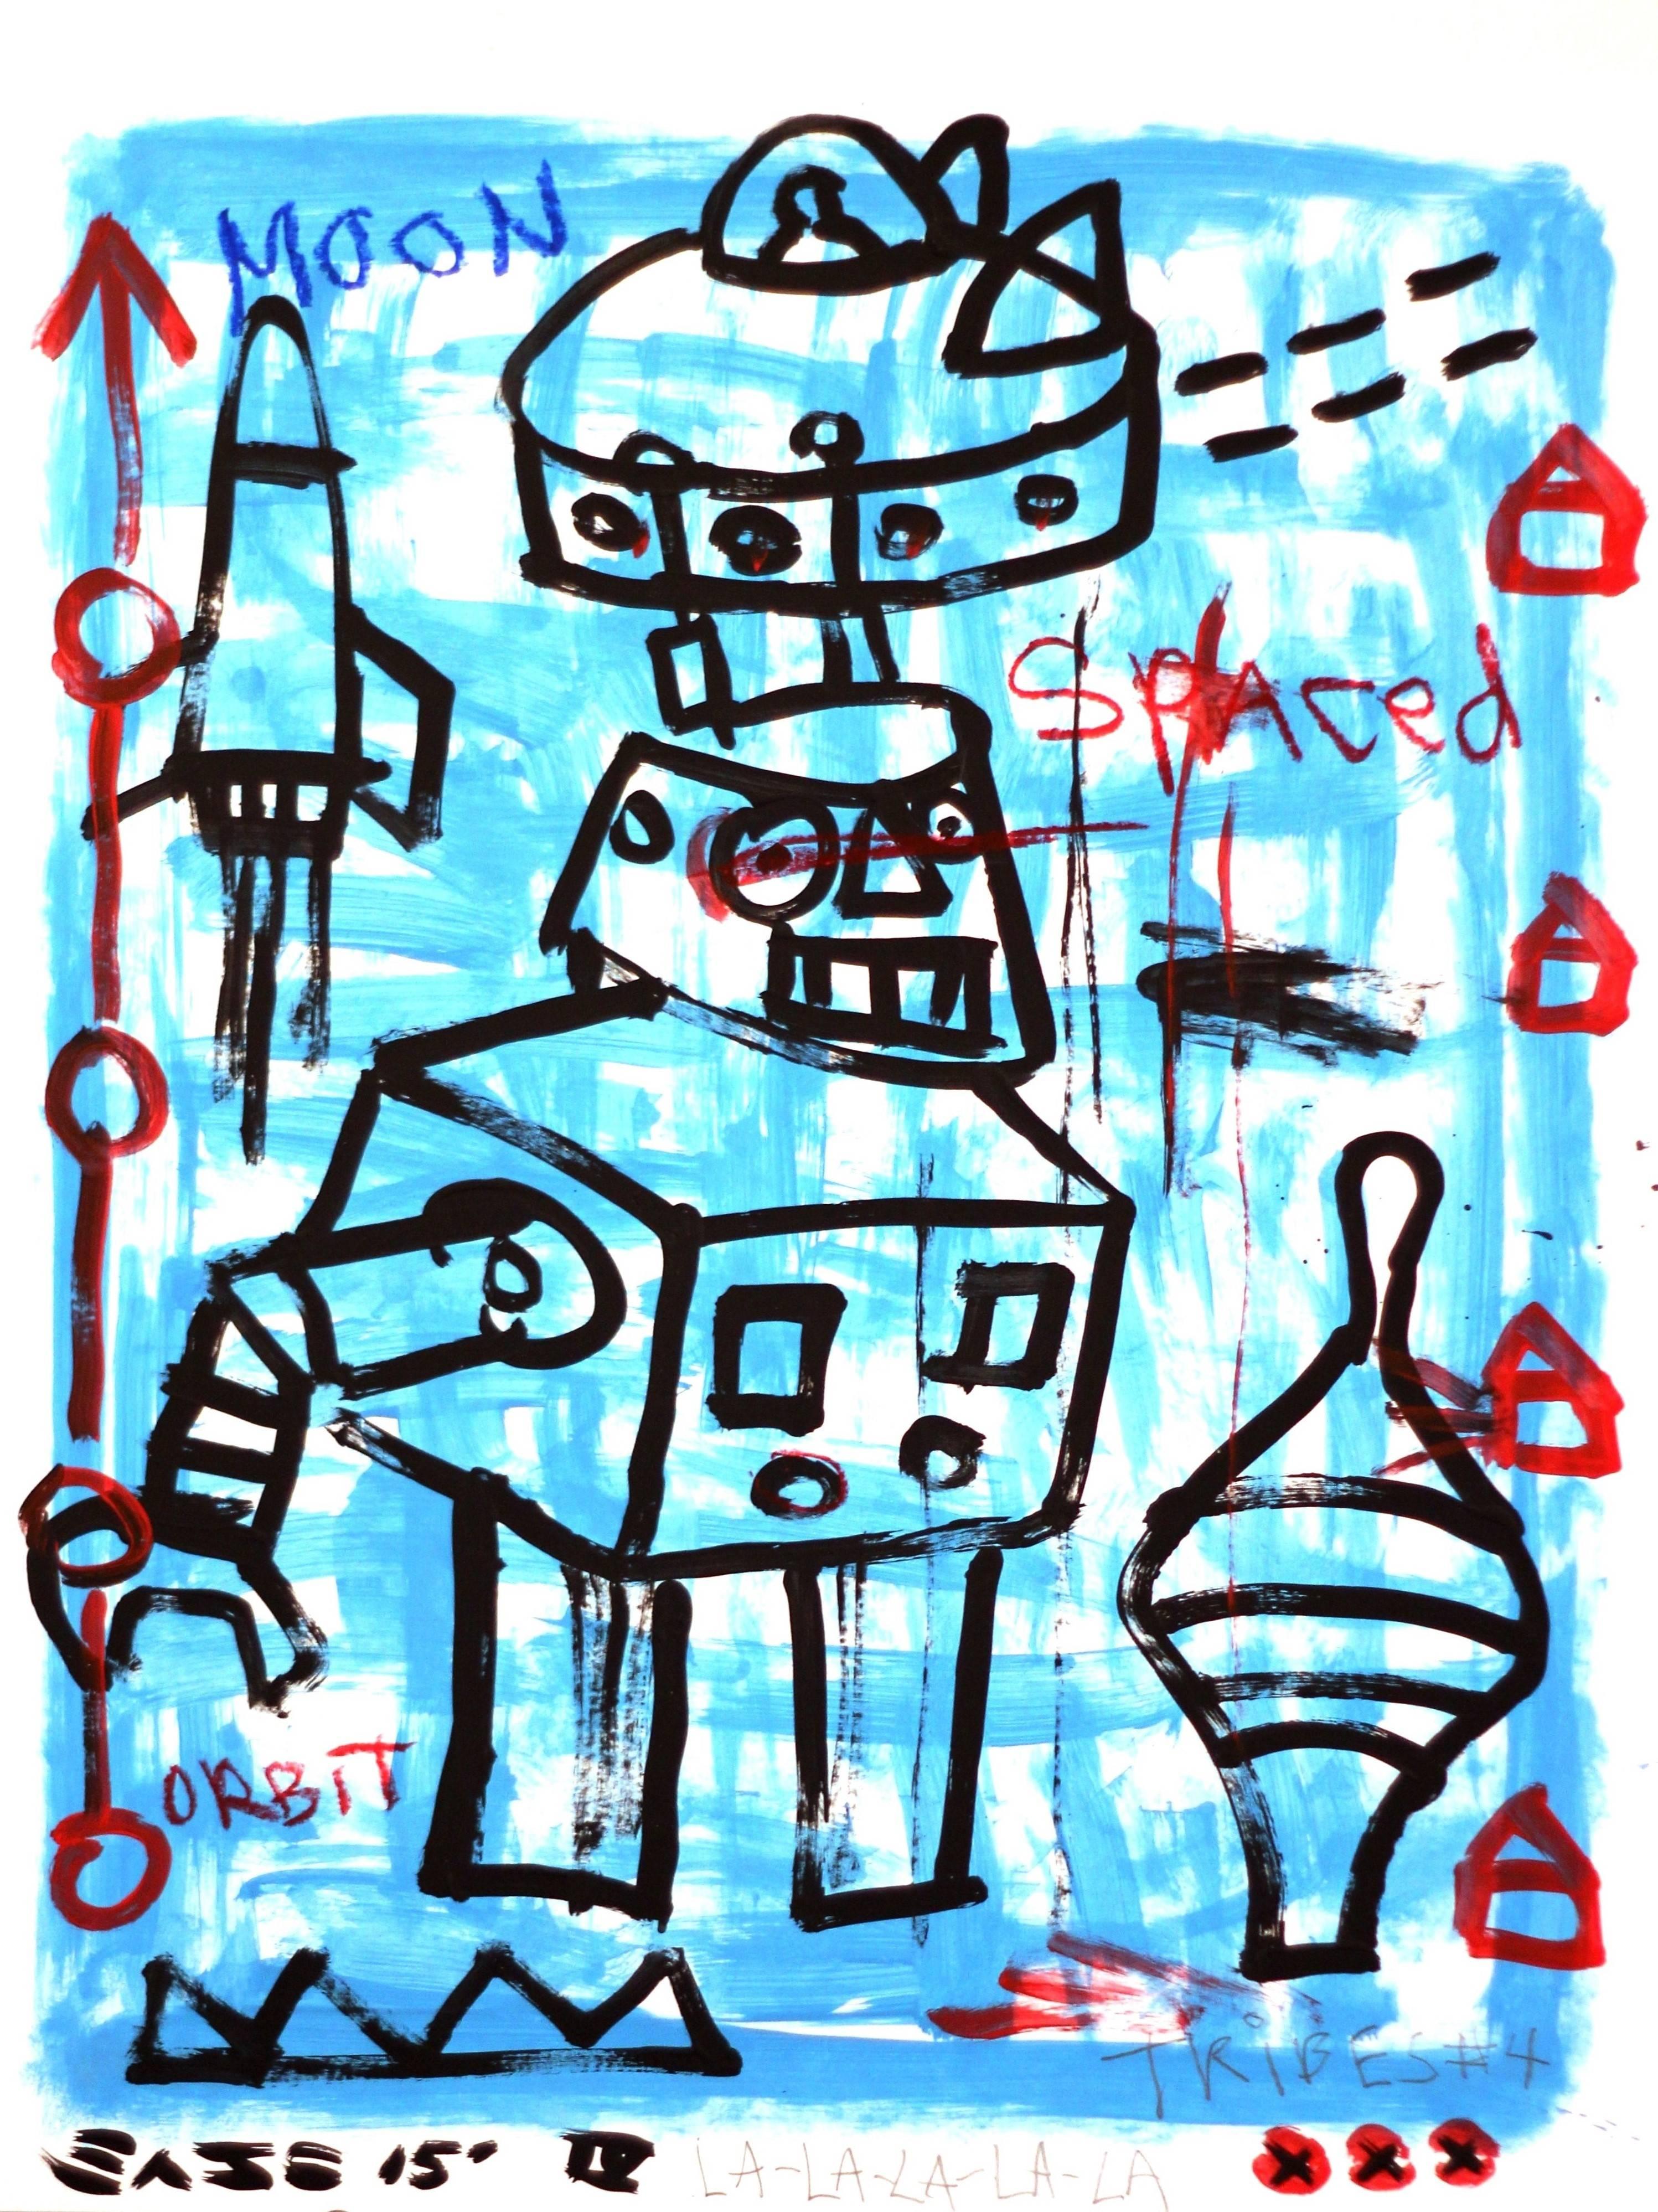 "Moon Robot" - Original Blue Sci-Fi Robots Street Art by Gary John